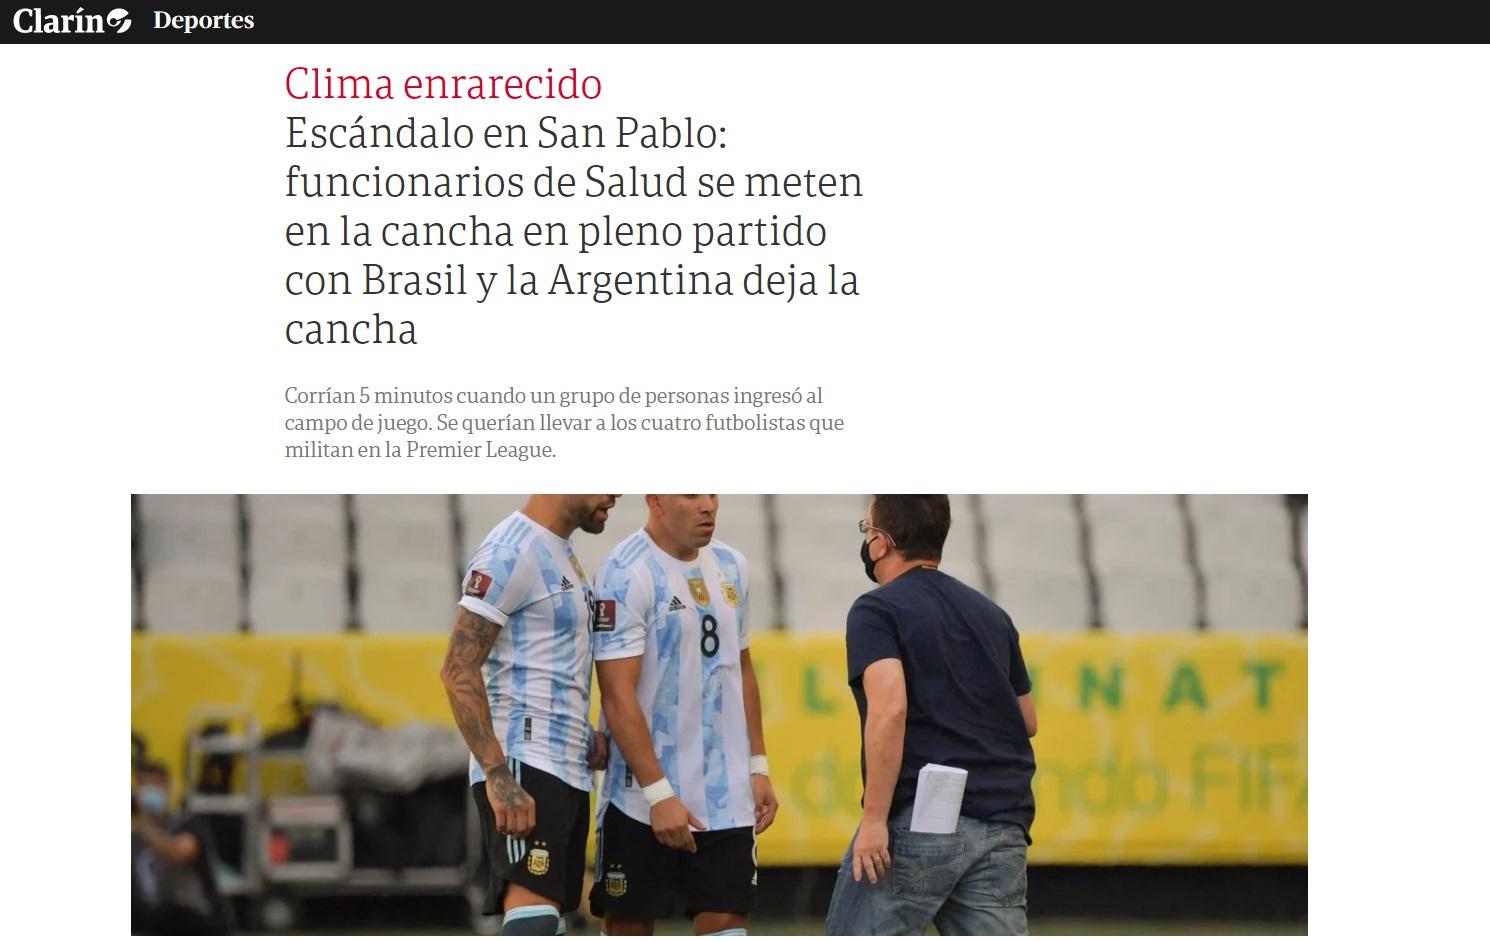 Papelão: Argentina leva uniforme errado para jogo e é eliminada do Pan